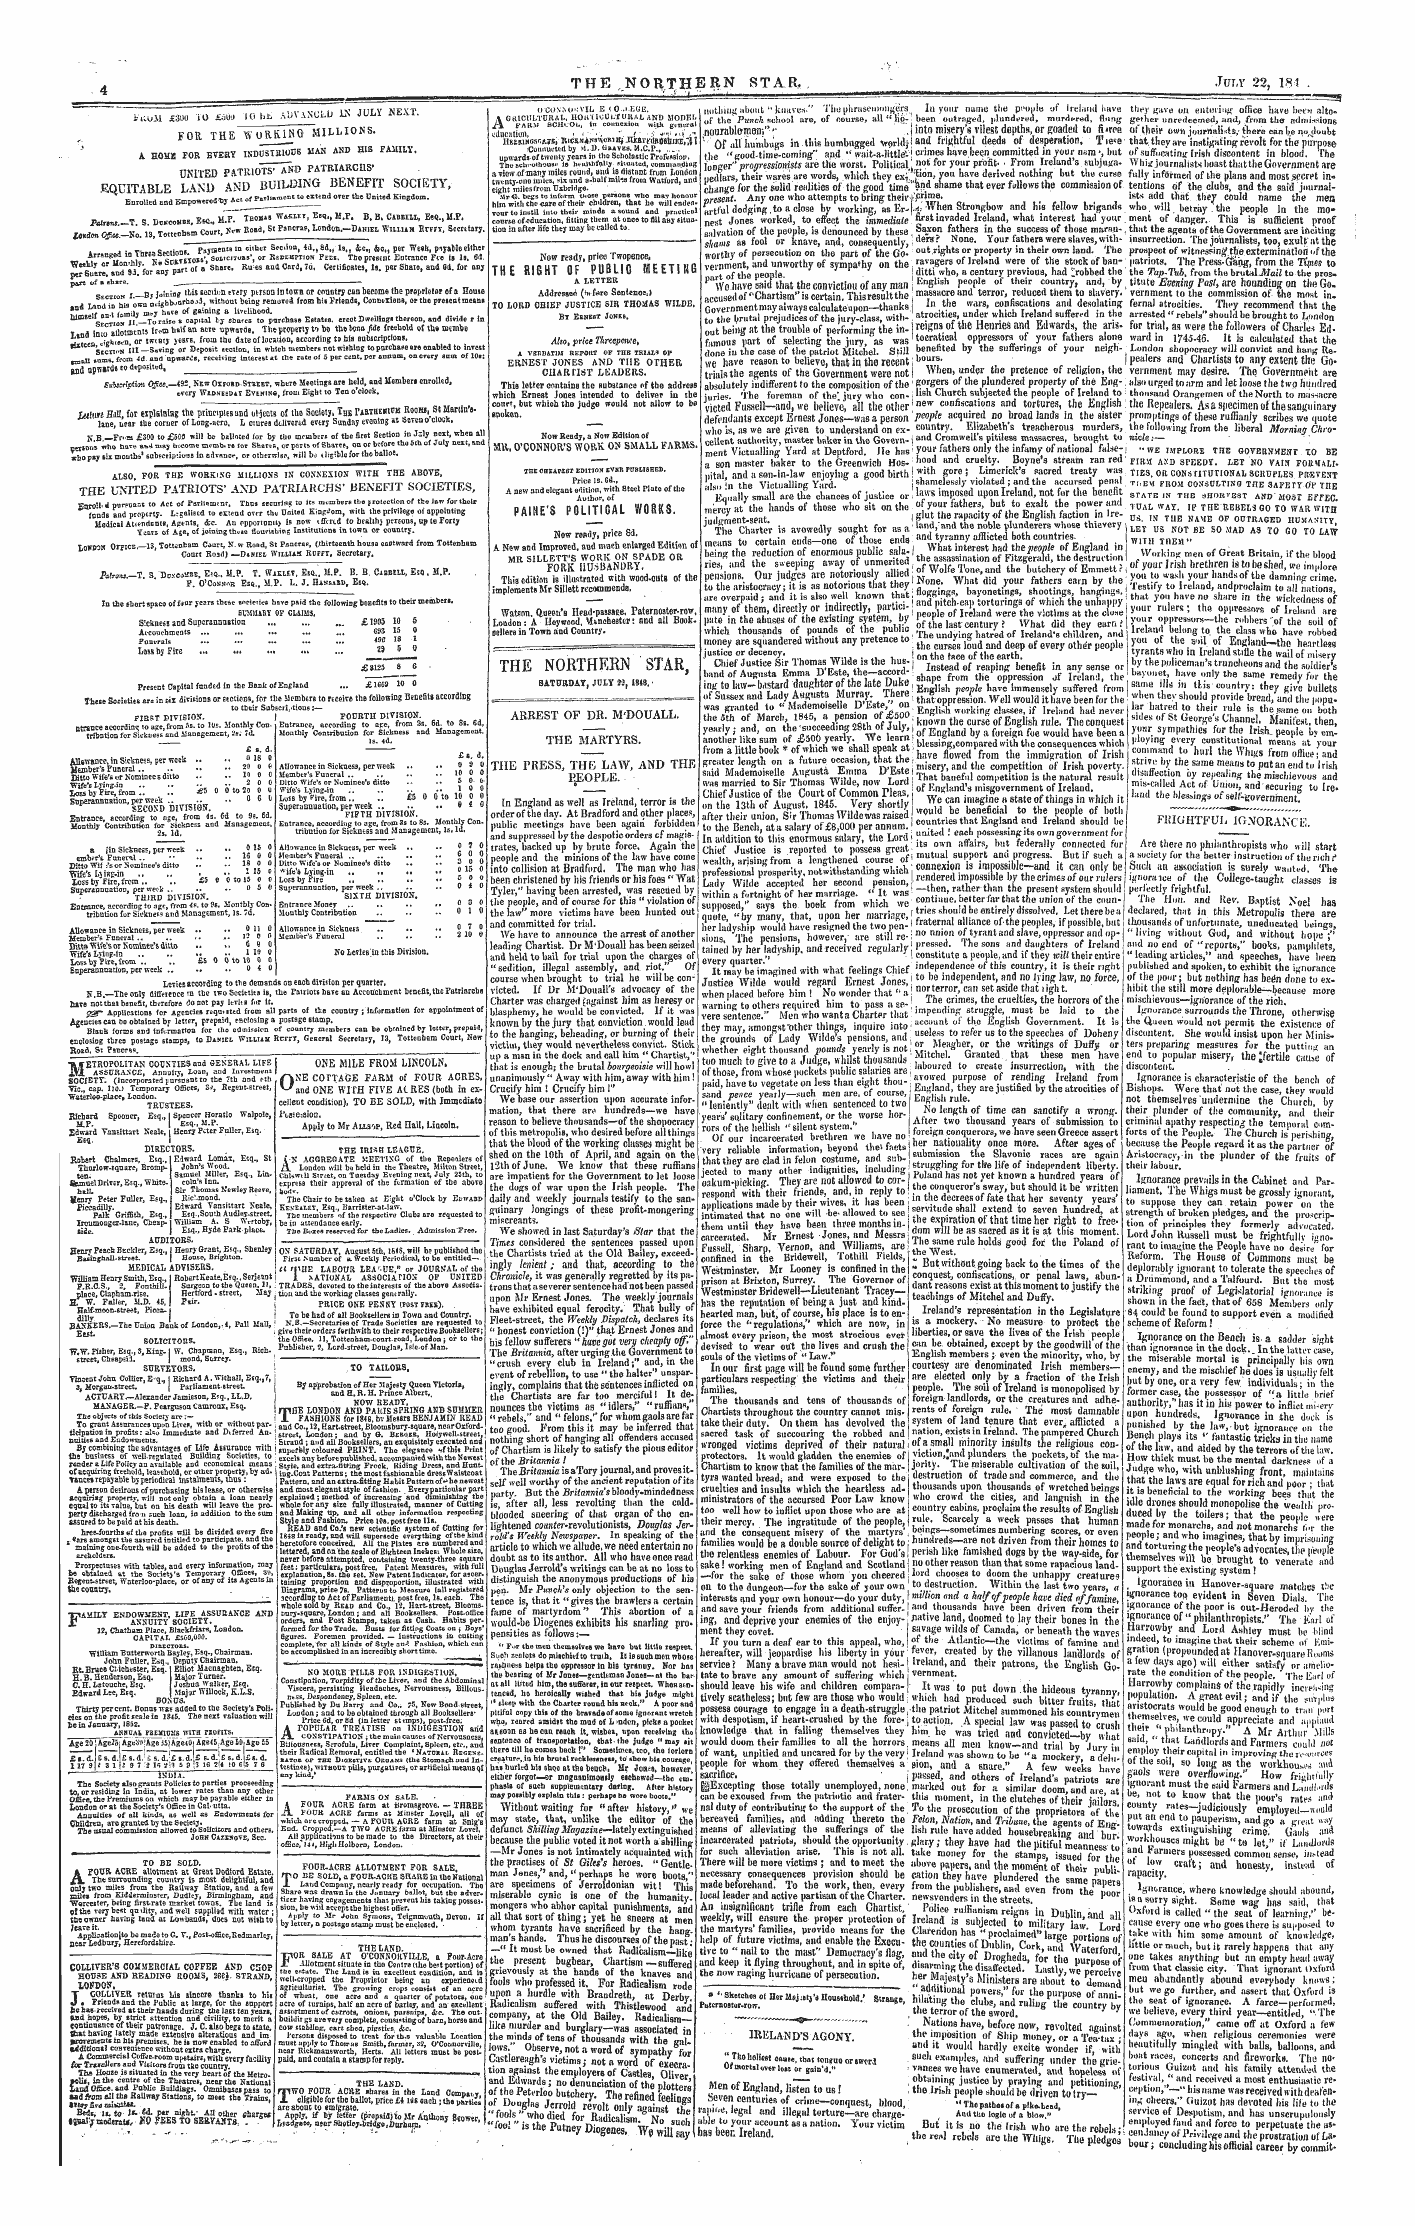 Northern Star (1837-1852): jS F Y, 1st edition - I- Uom £3u0 10 £Io-J 10 Bji Advanuld Ix July Next.